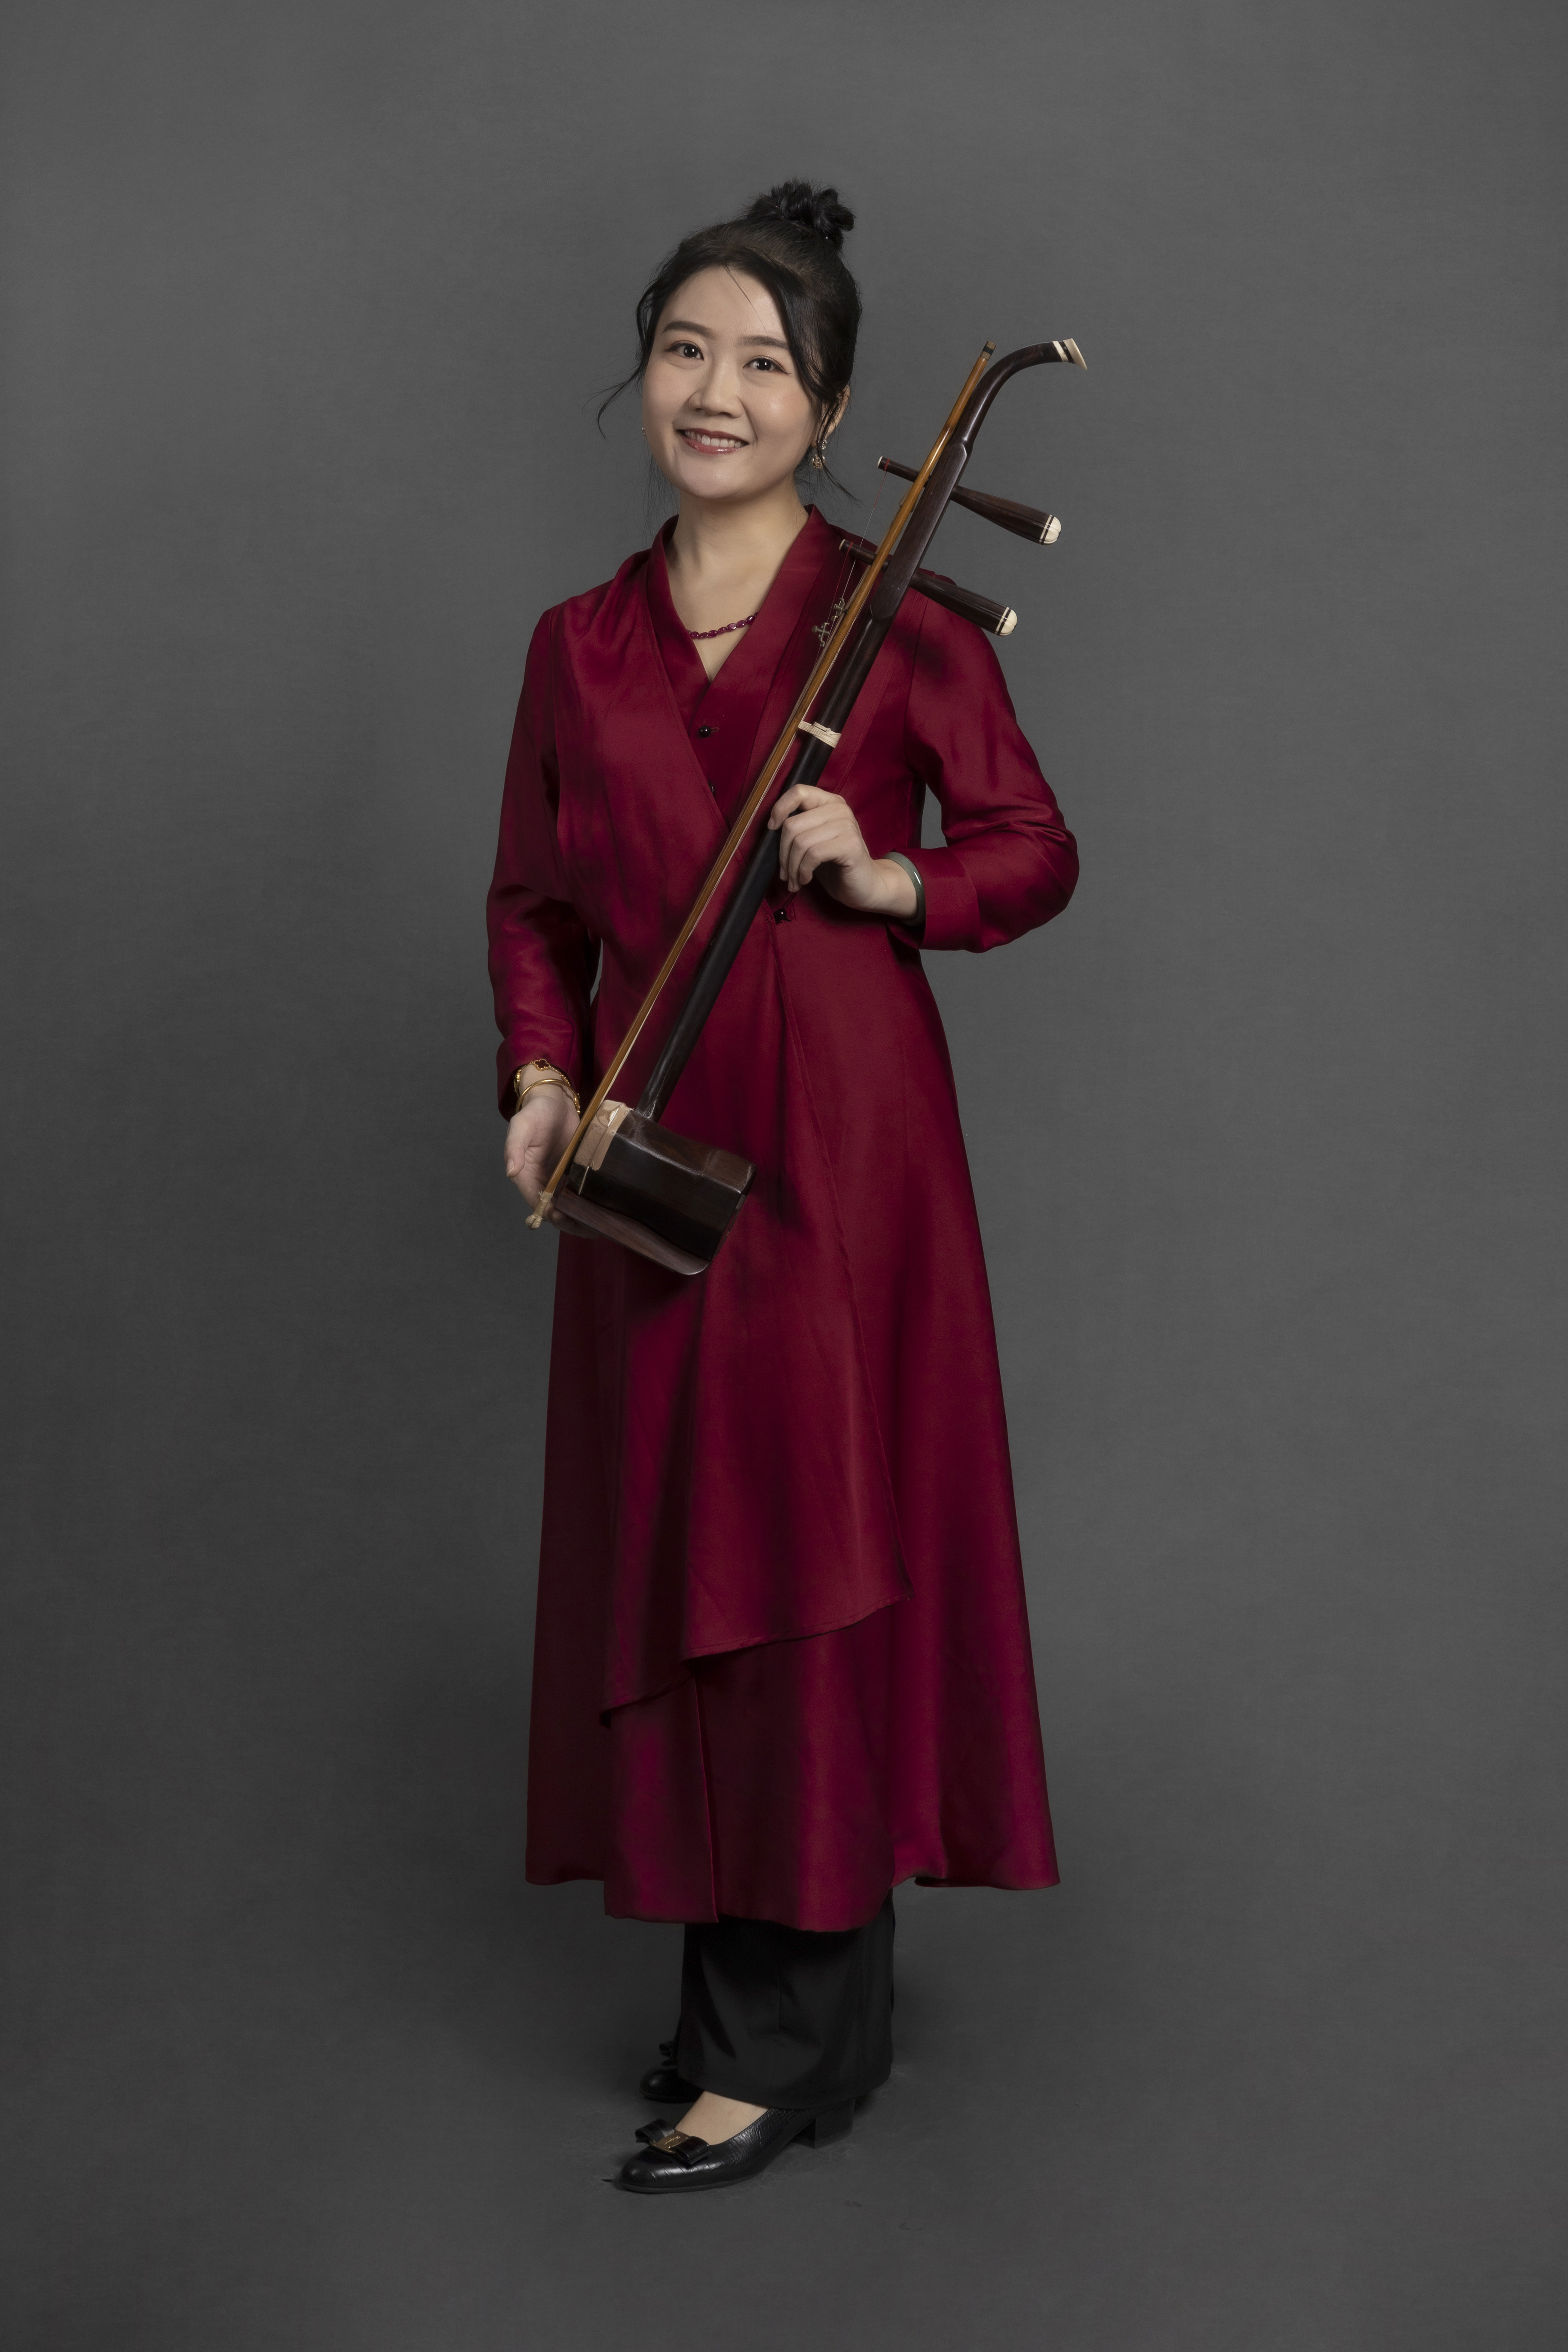 Zhao_Li Musicians of Singapore Chinese Orchestra